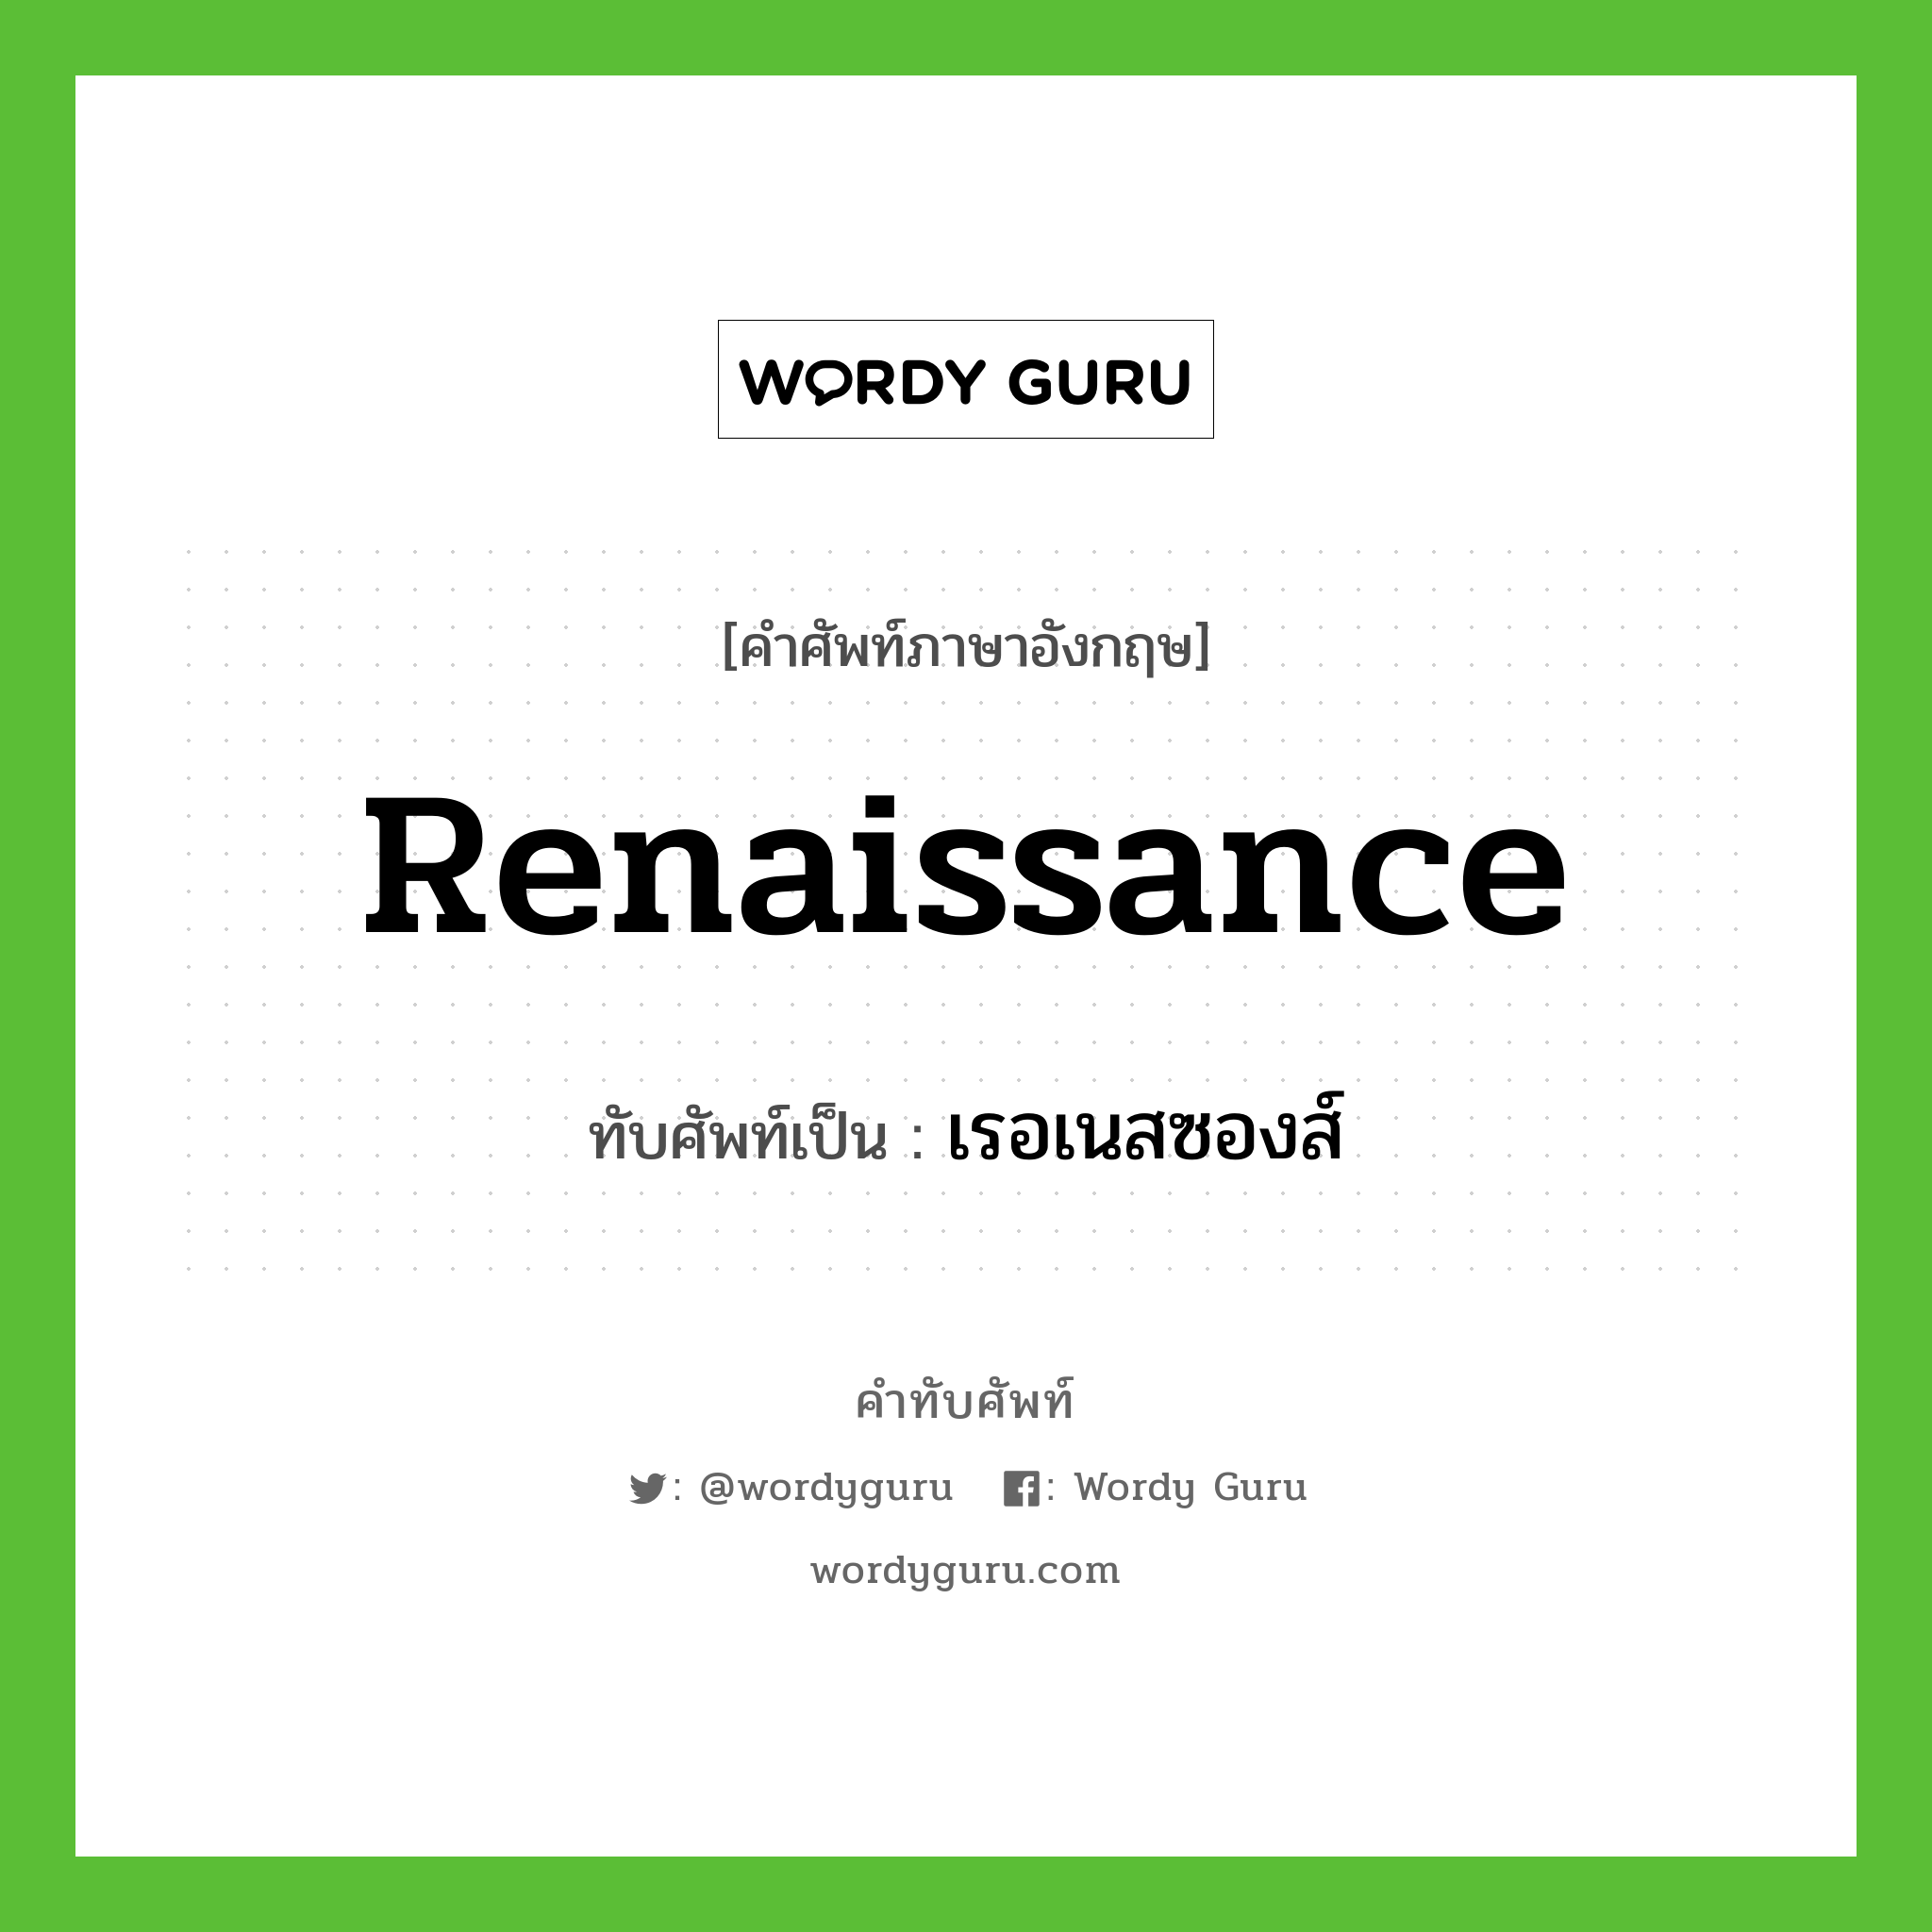 Renaissance เขียนเป็นคำไทยว่าอะไร?, คำศัพท์ภาษาอังกฤษ Renaissance ทับศัพท์เป็น เรอเนสซองส์